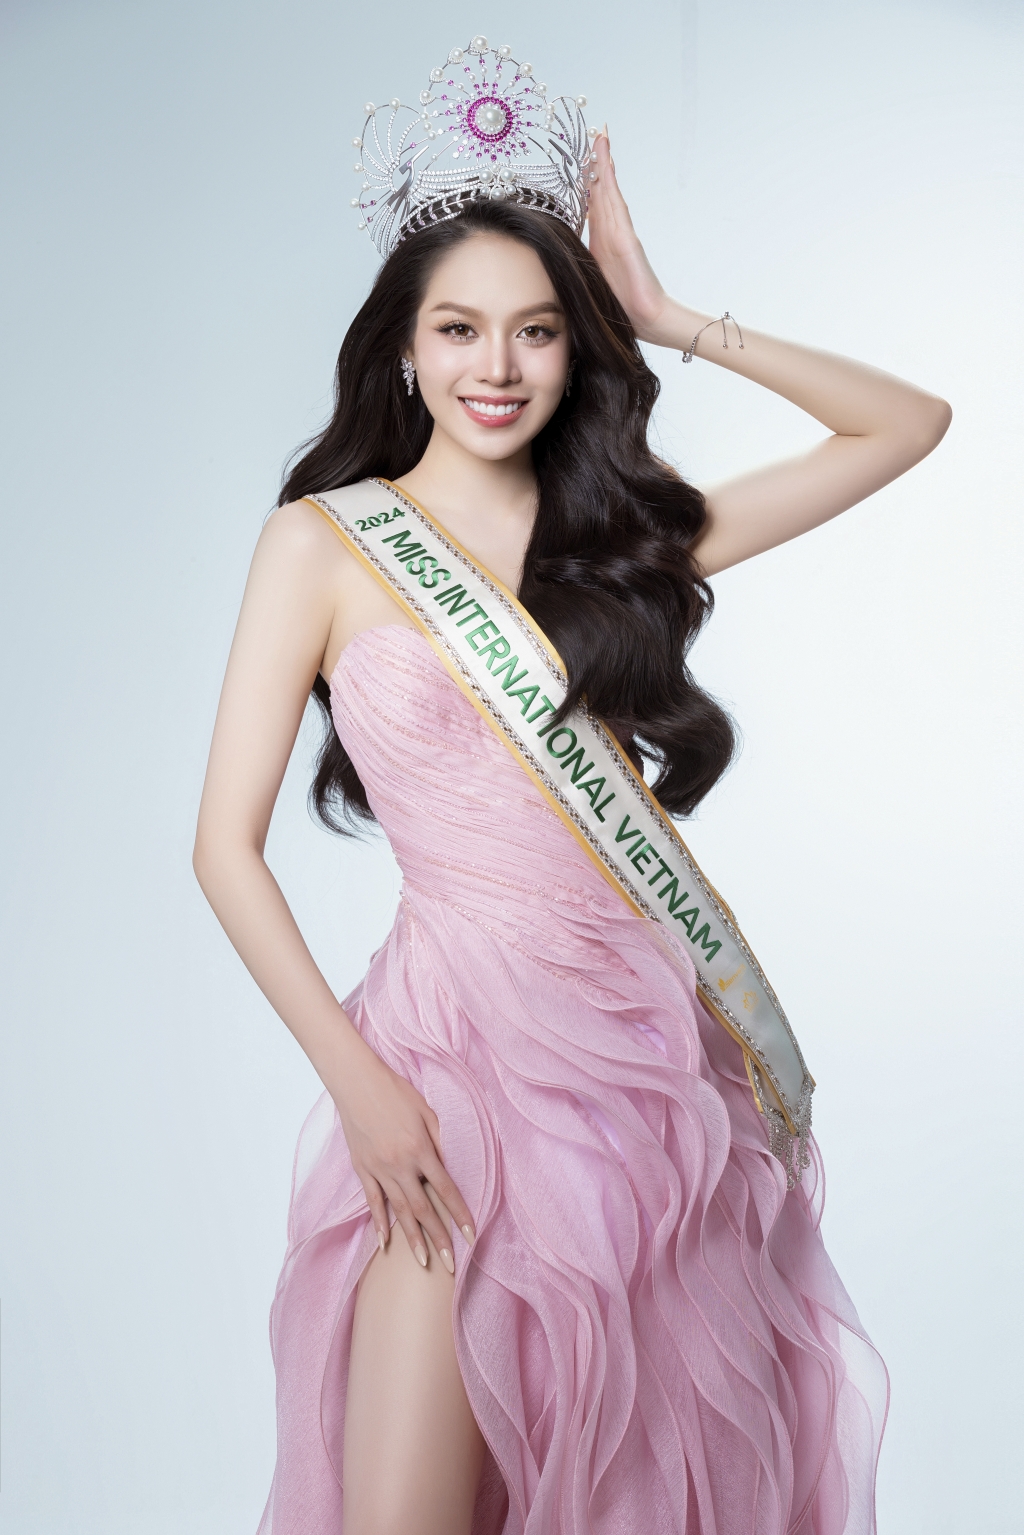 Đương kim Hoa hậu Việt Nam mừng sinh nhật tuổi 22, sẵn sàng đi thi quốc tế